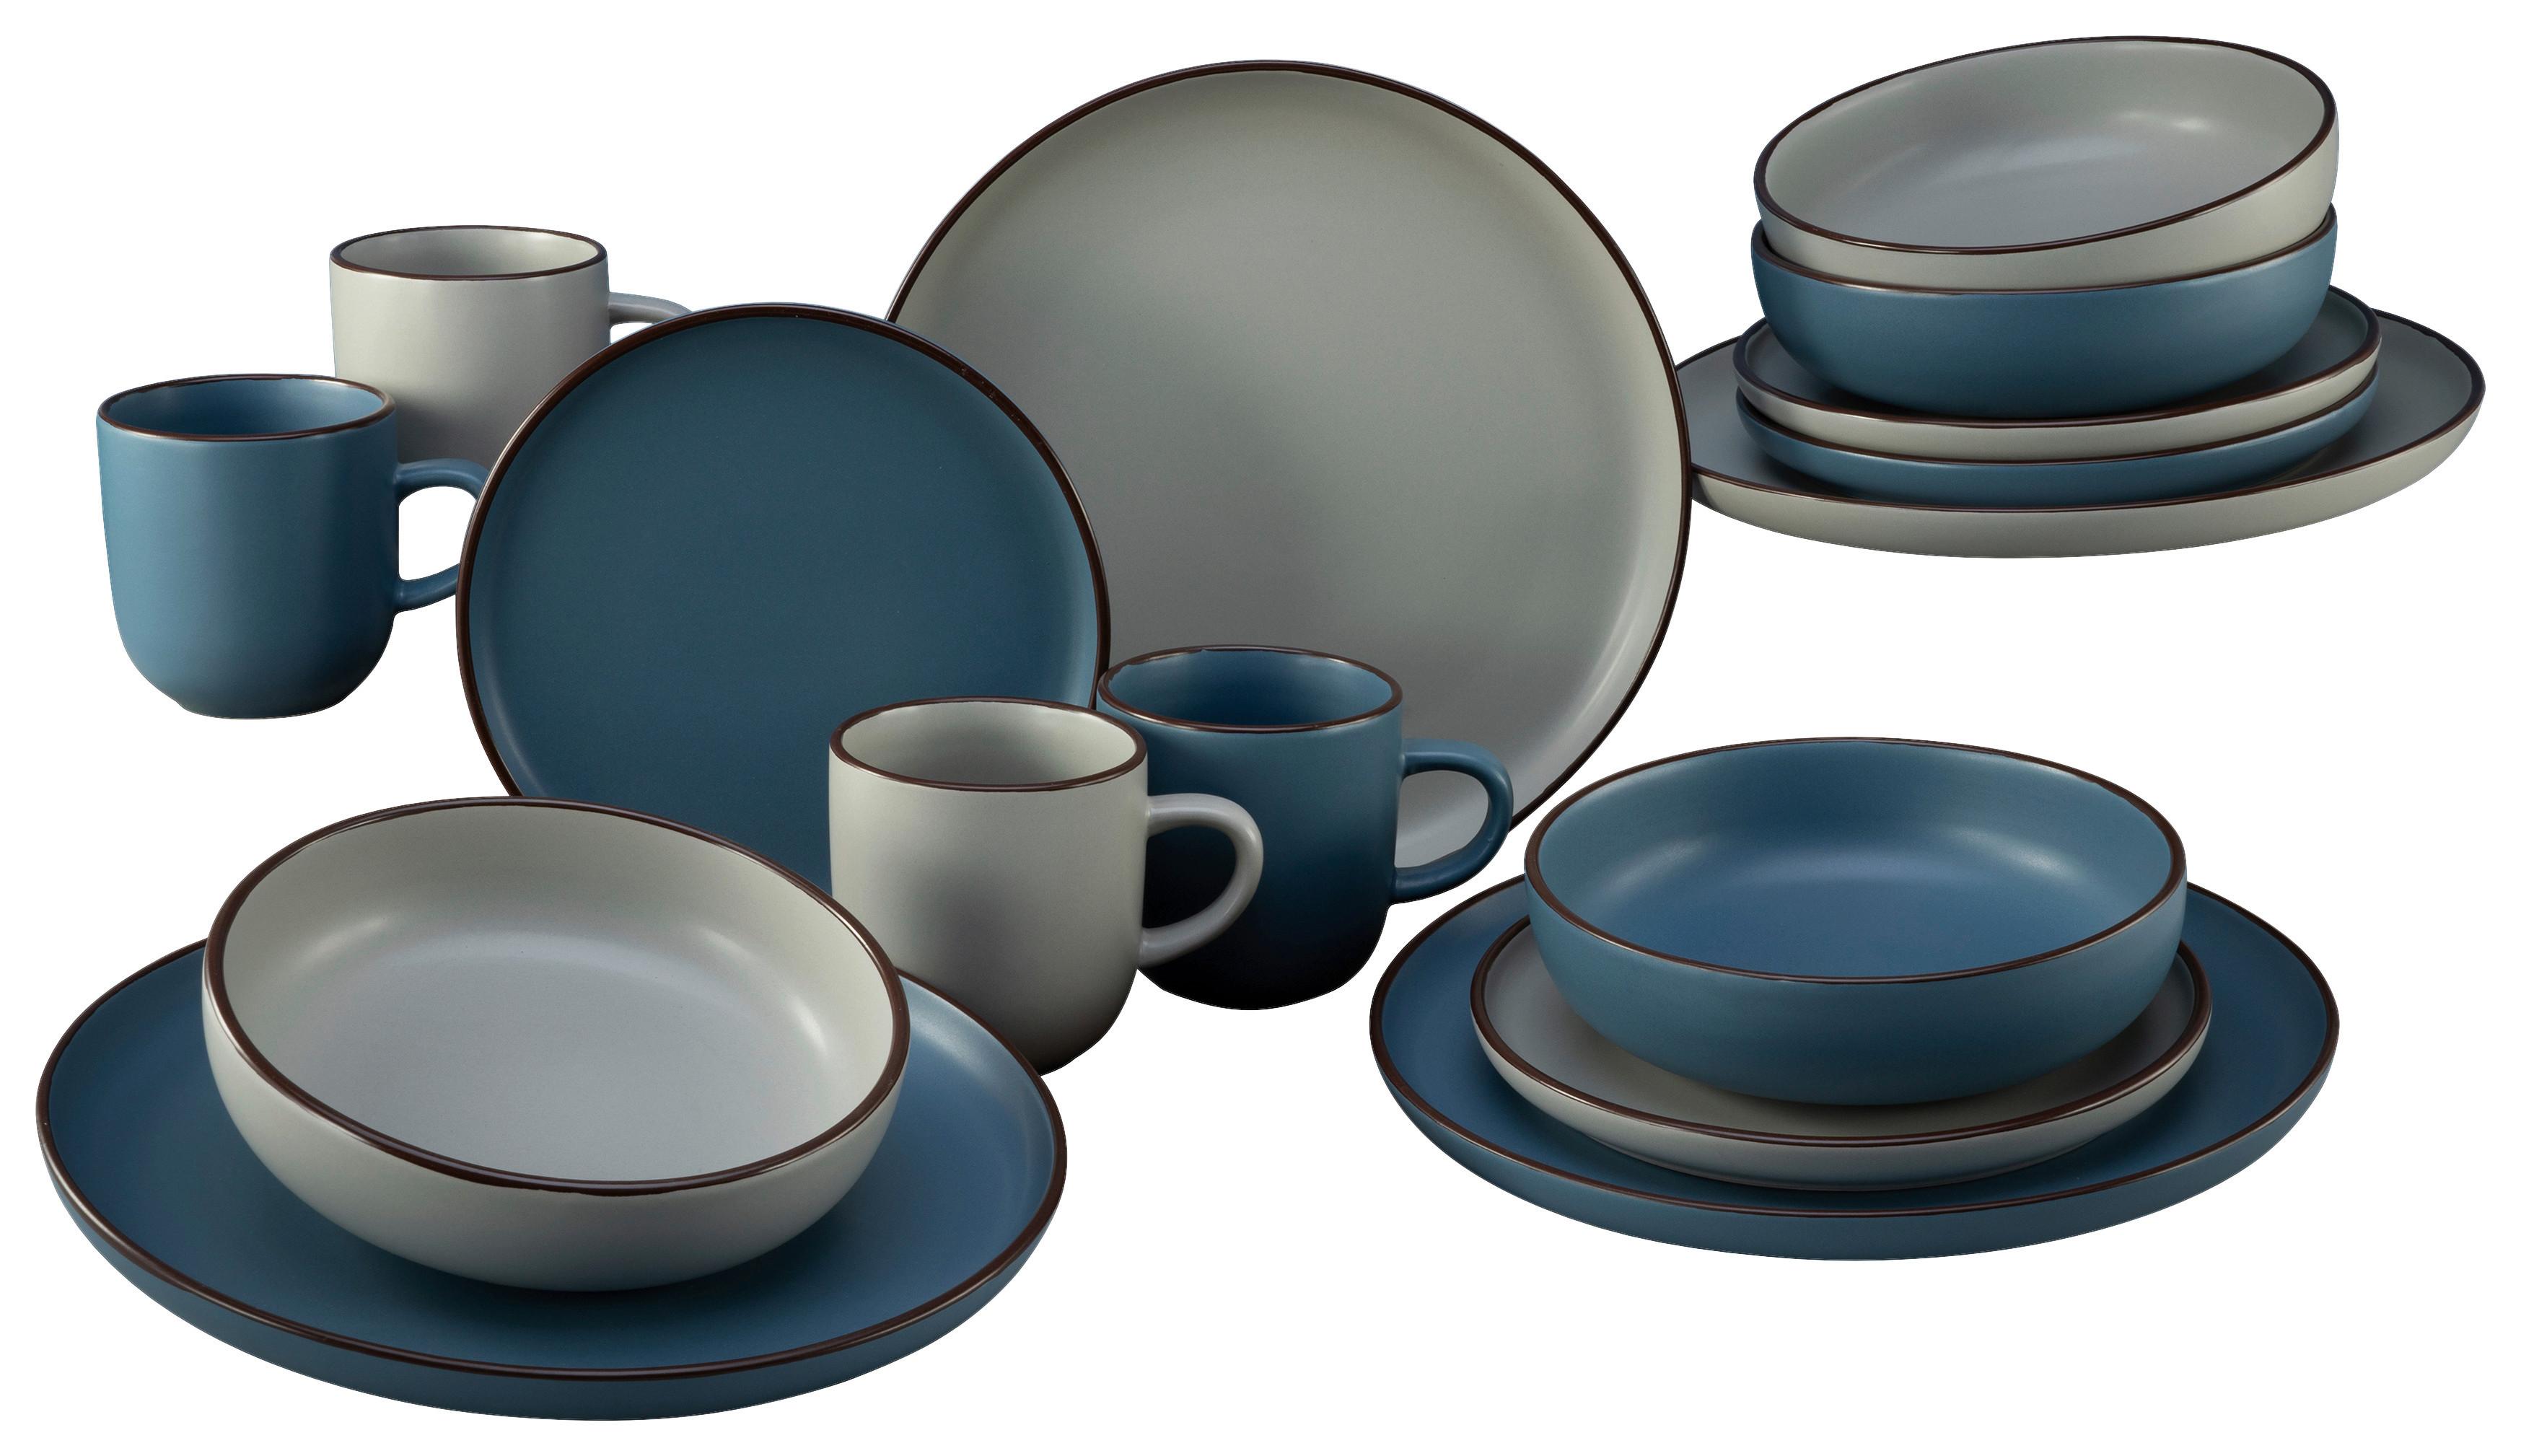 Kombiservice Keramik 4 Personen Geschirr Set - Blau/Beige, Basics, Keramik (29,5/28,5/28cm) - Creatable